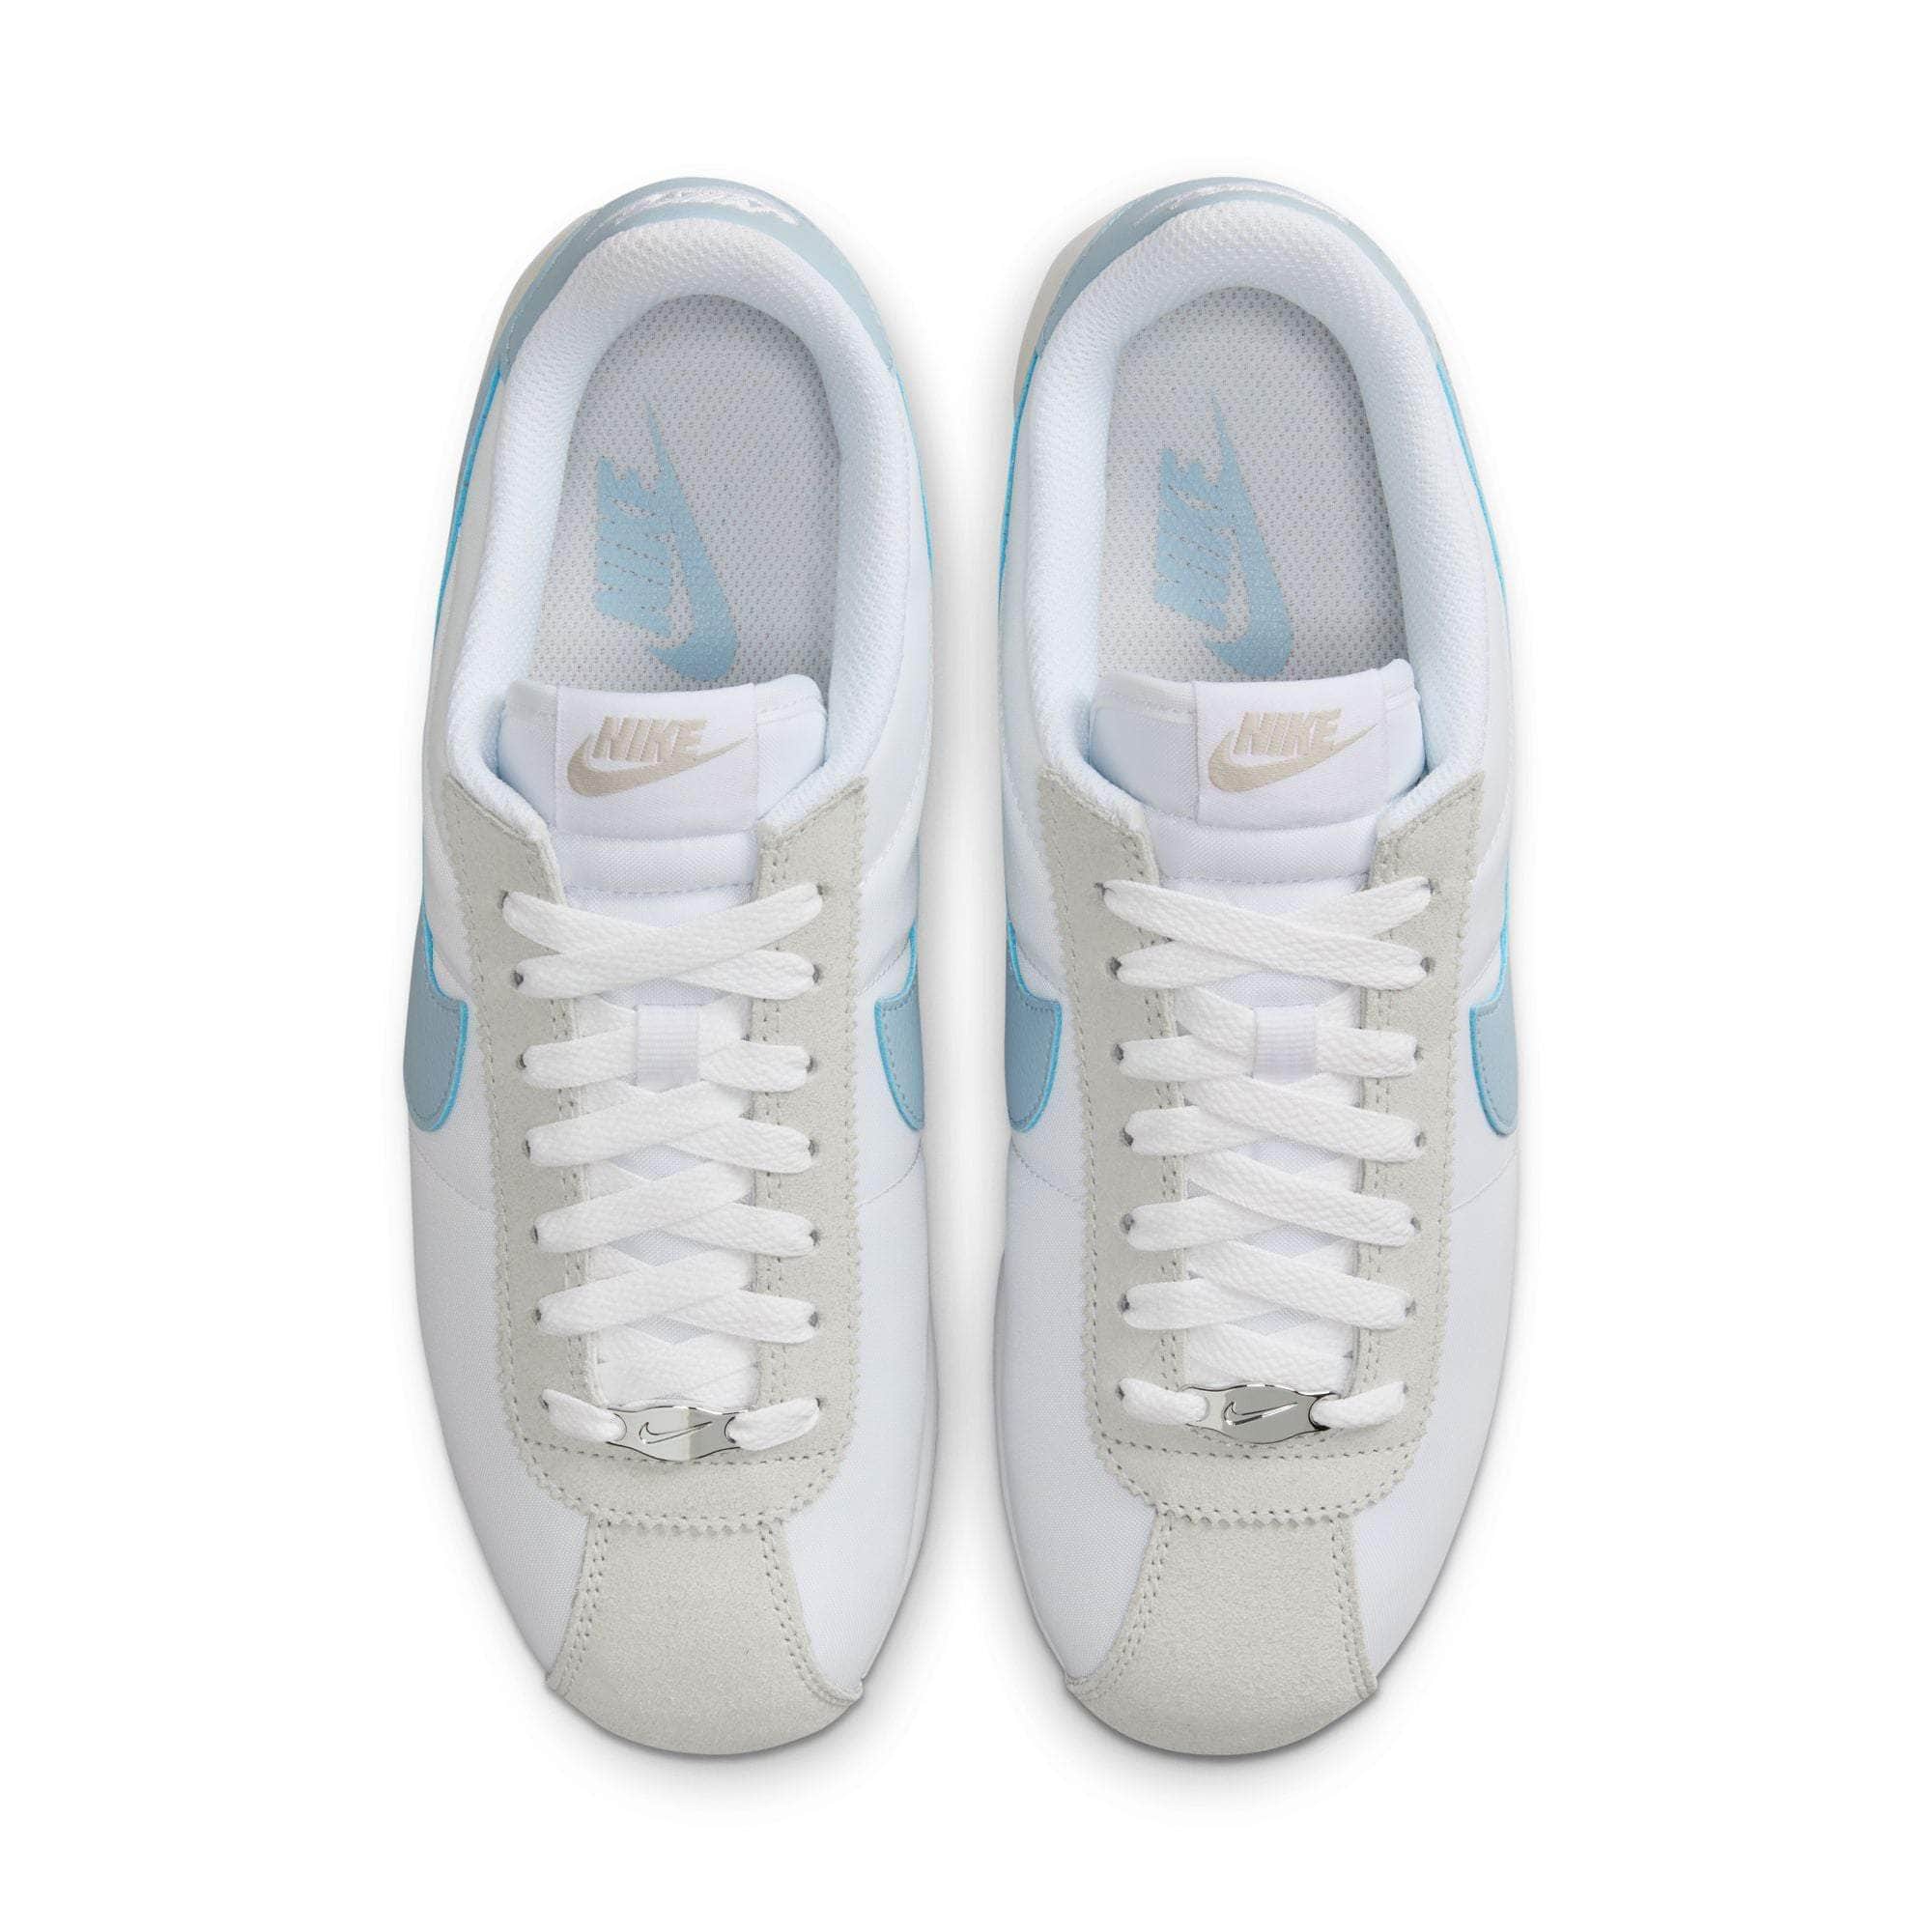 Nike Footwear Nike Cortez "Light Armory Blue" - Women's